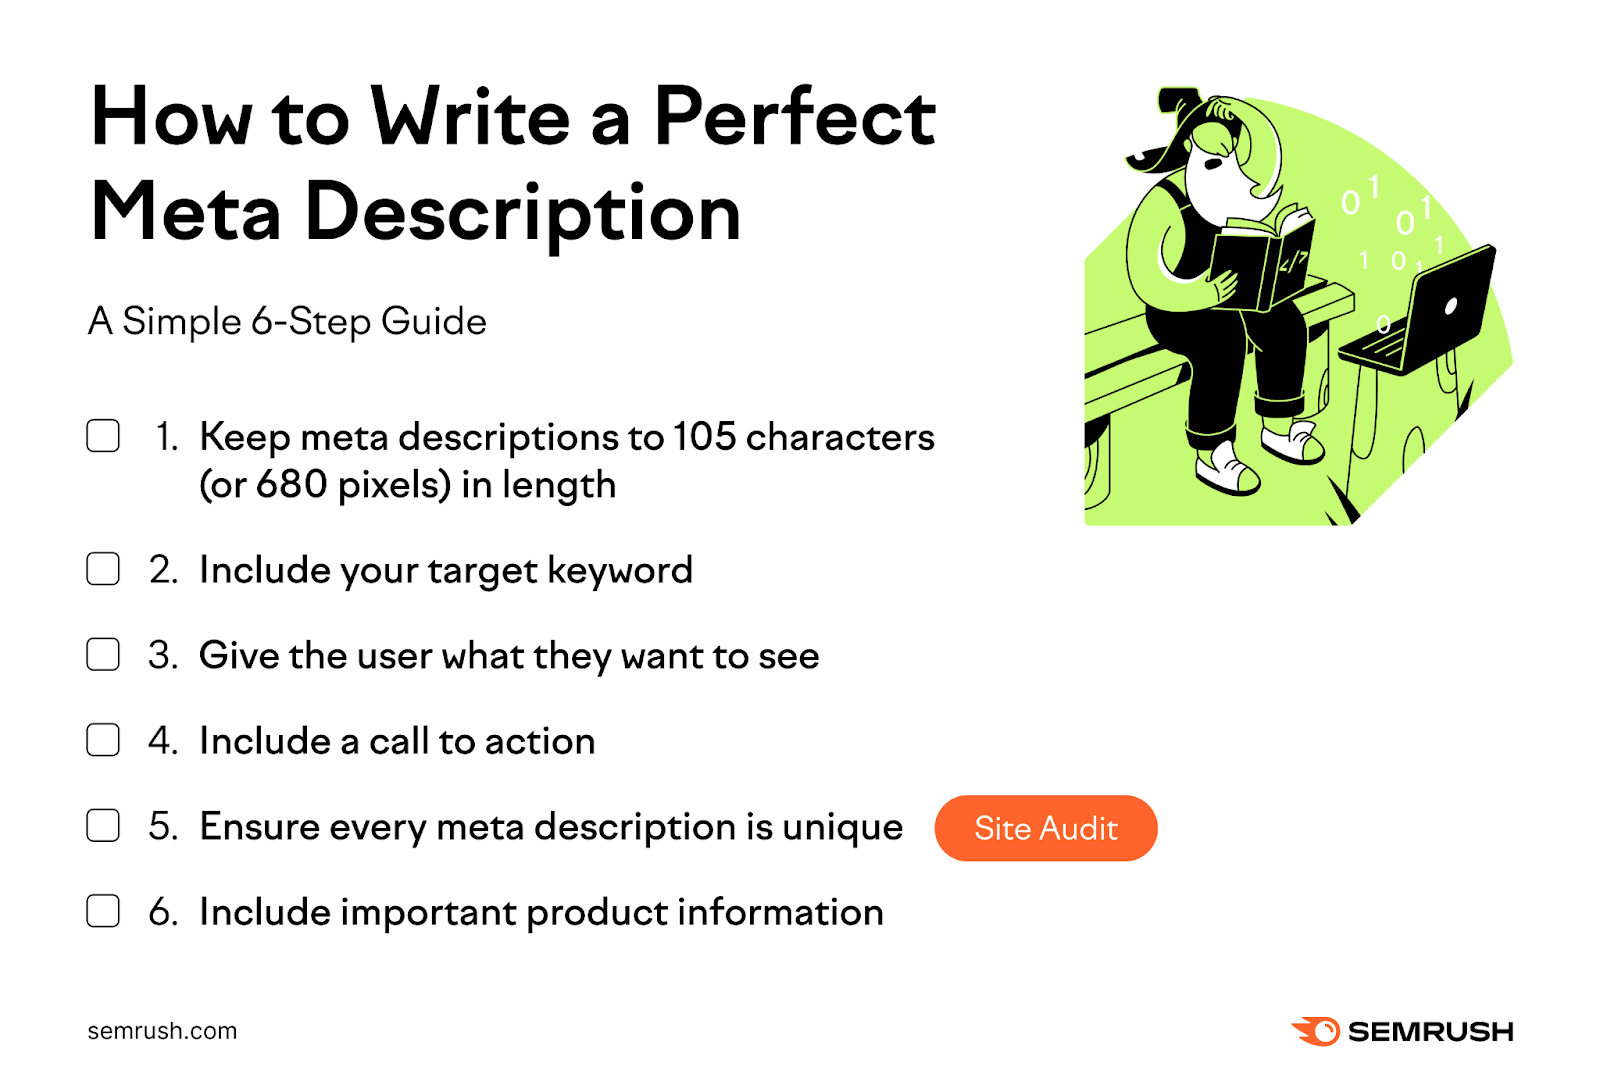 How to write a perfect meta description steps